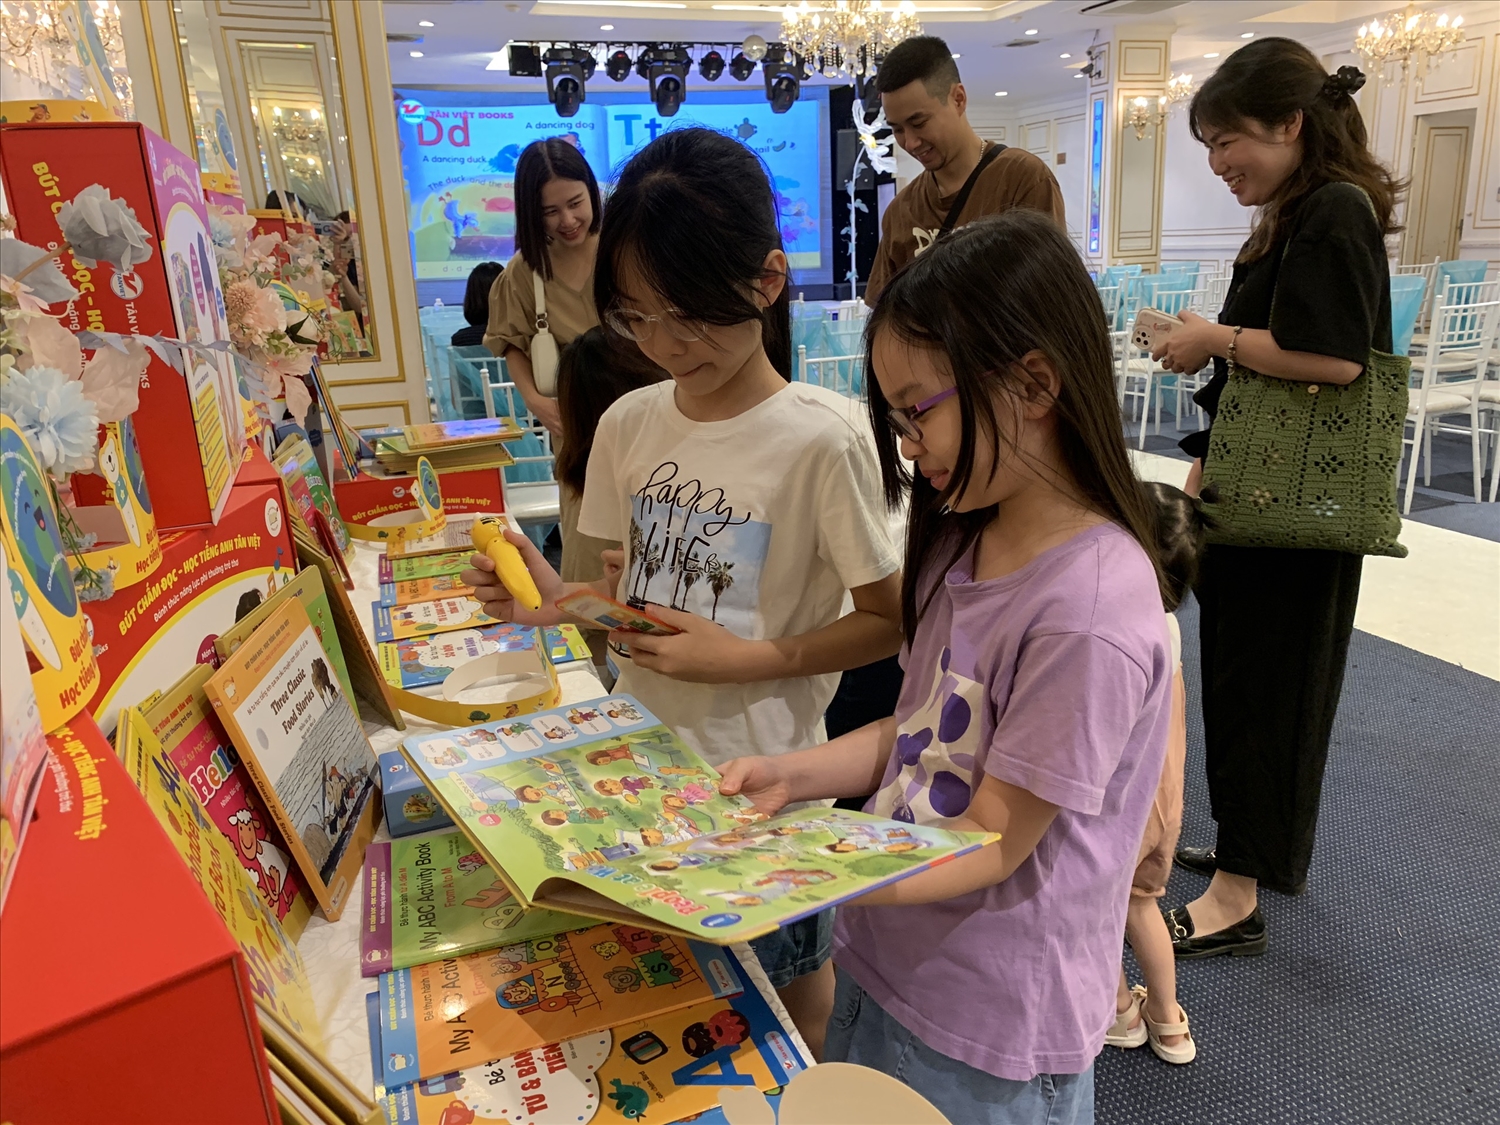 Bộ Bút chấm đọc - Học tiếng Anh Tân Việt tích hợp âm thanh sống động và hình ảnh bắt mắt, mang lại hứng thú cho trẻ khi tự học ngoại ngữ 